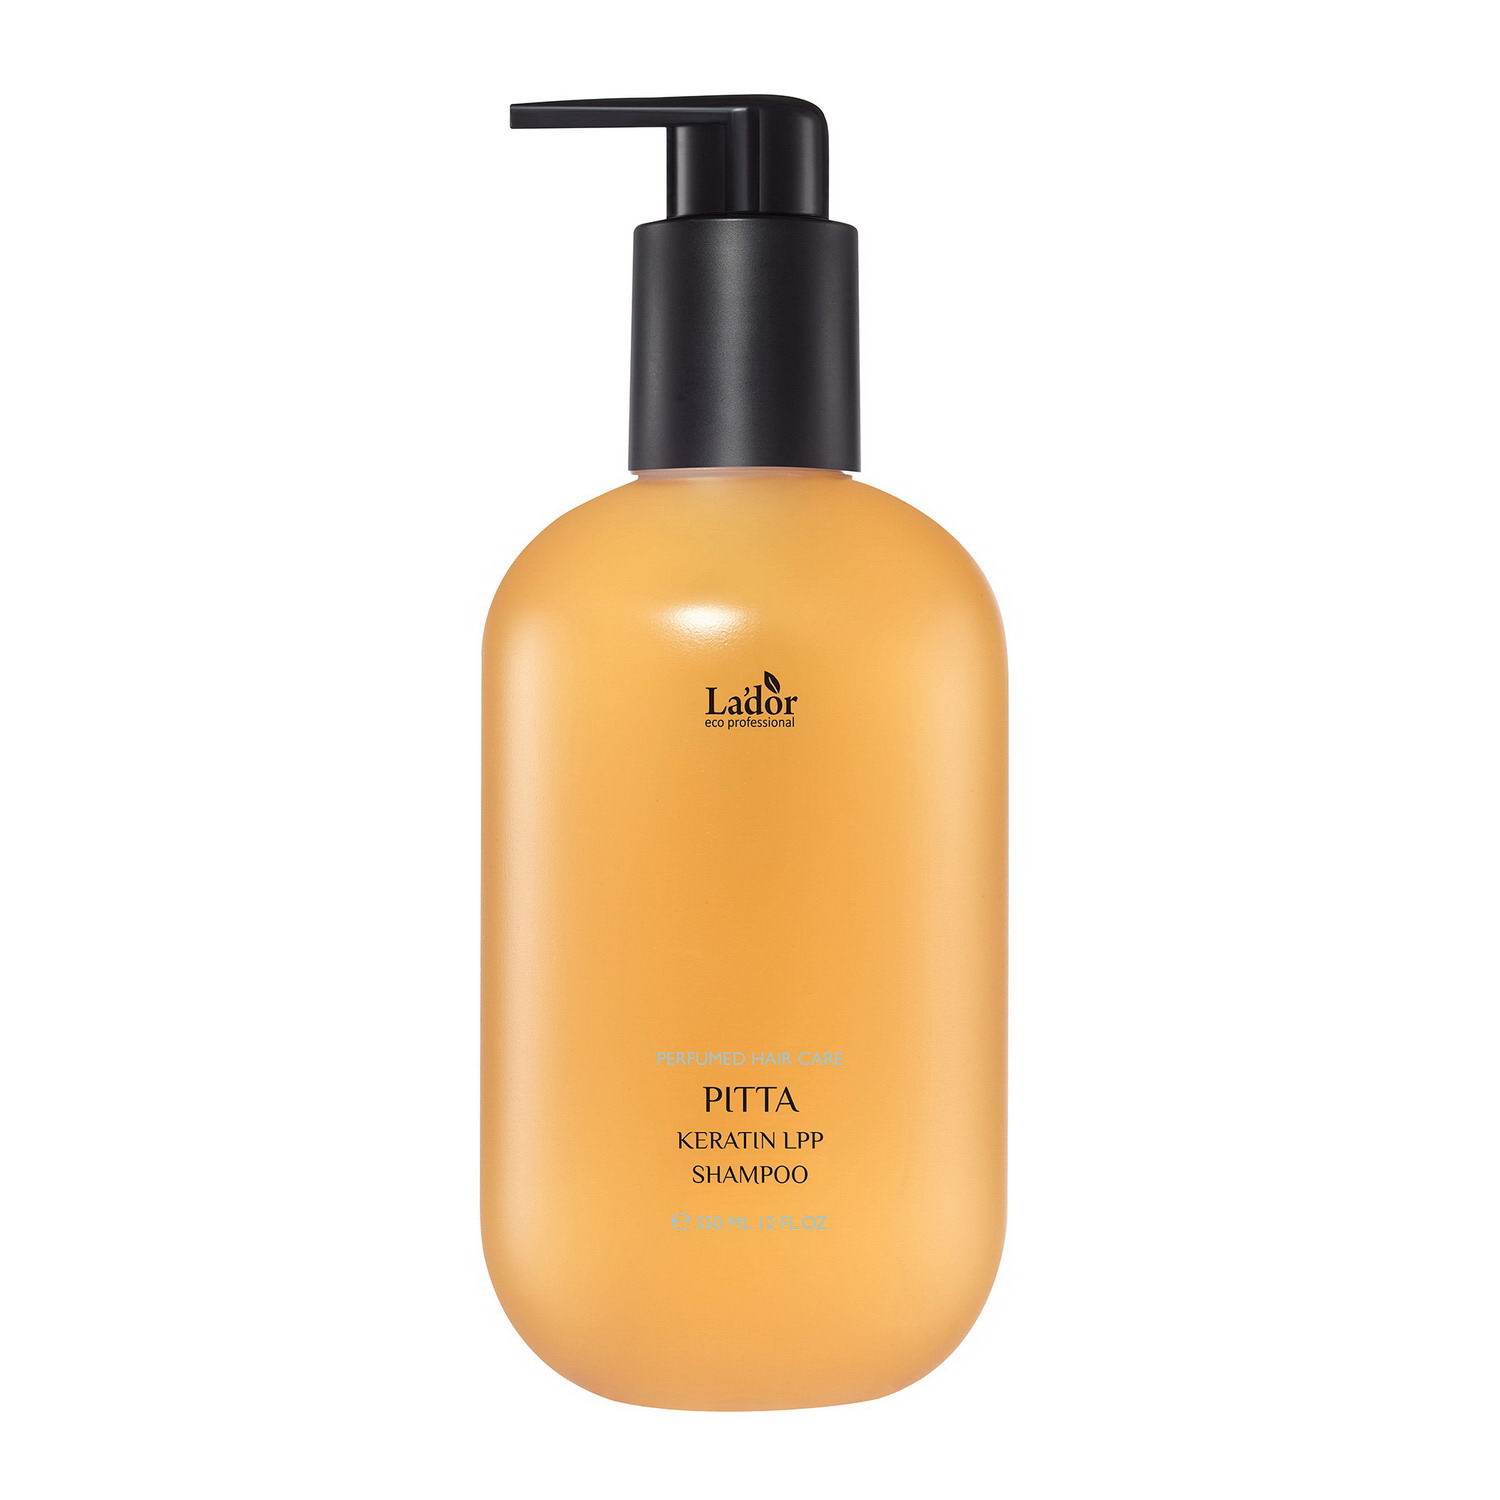 Шампунь La'dor Keratin LPP Shampoo Pitta Парфюмированный с кератином, 350 мл шампунь биоламинирующий collagen silk shampoo